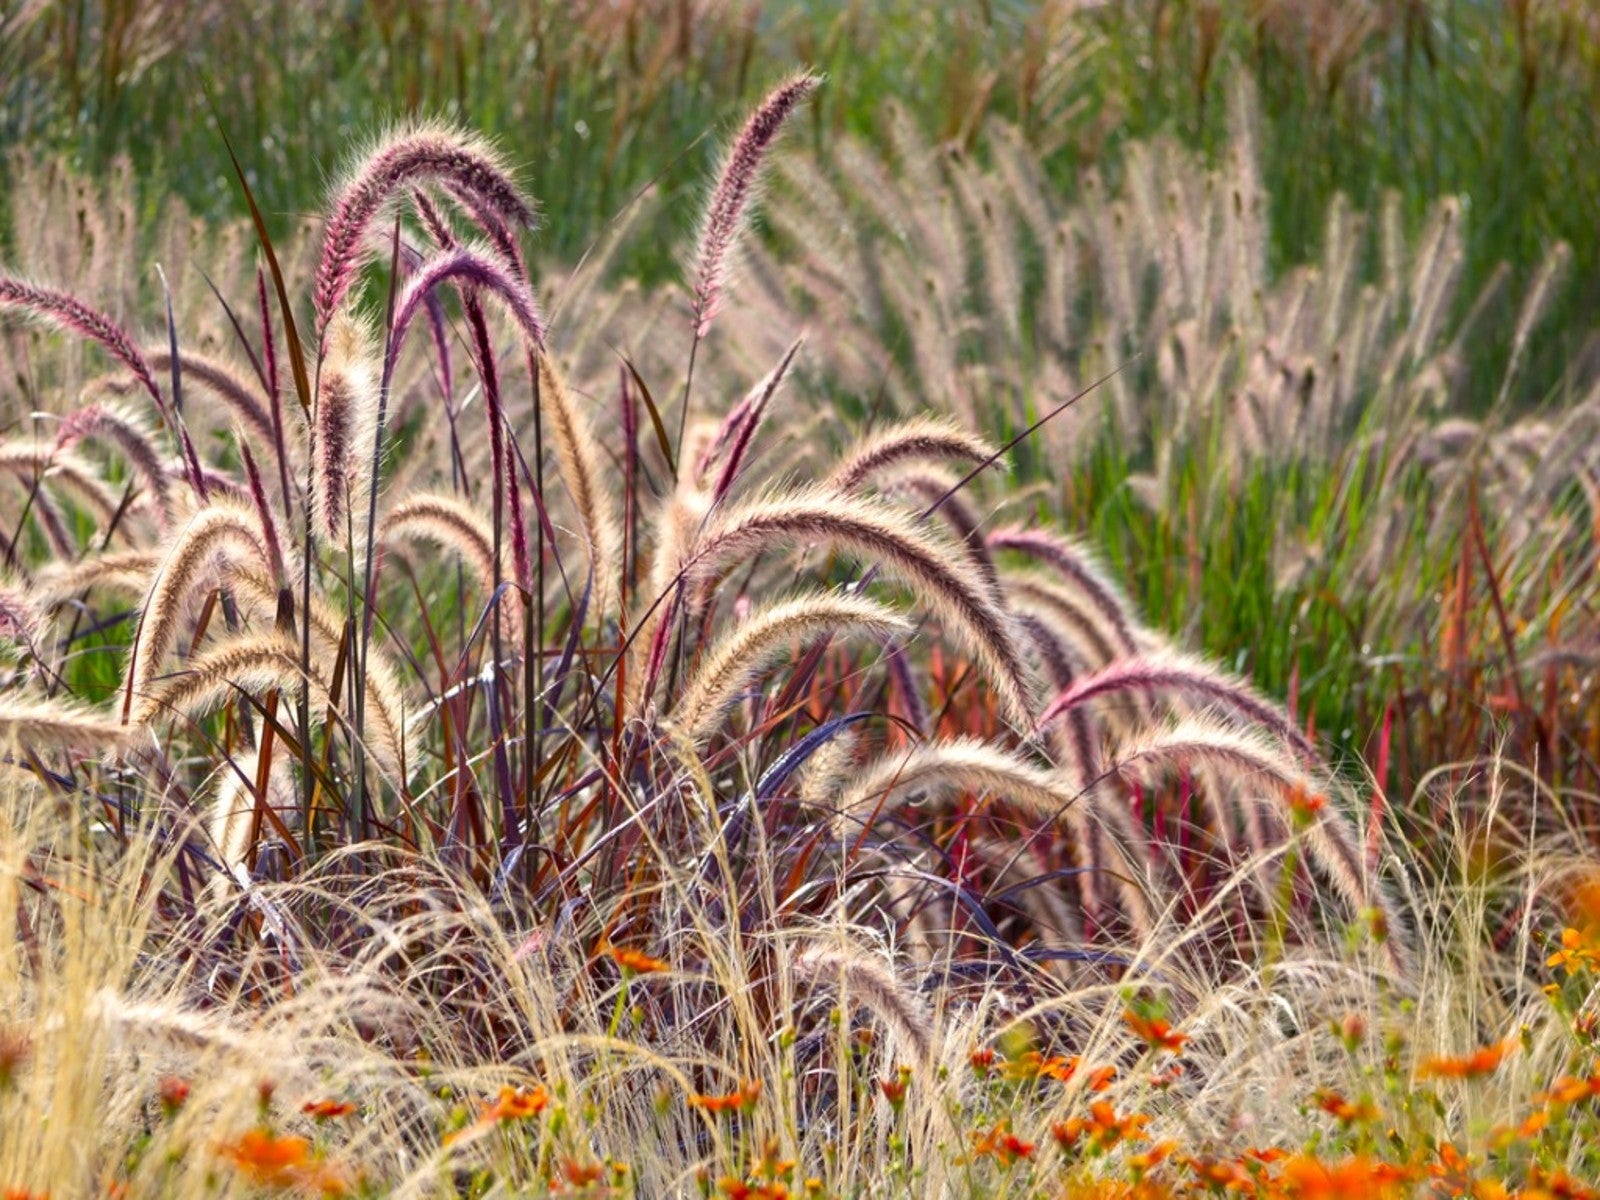 Several ornamental grasses in the sunshine